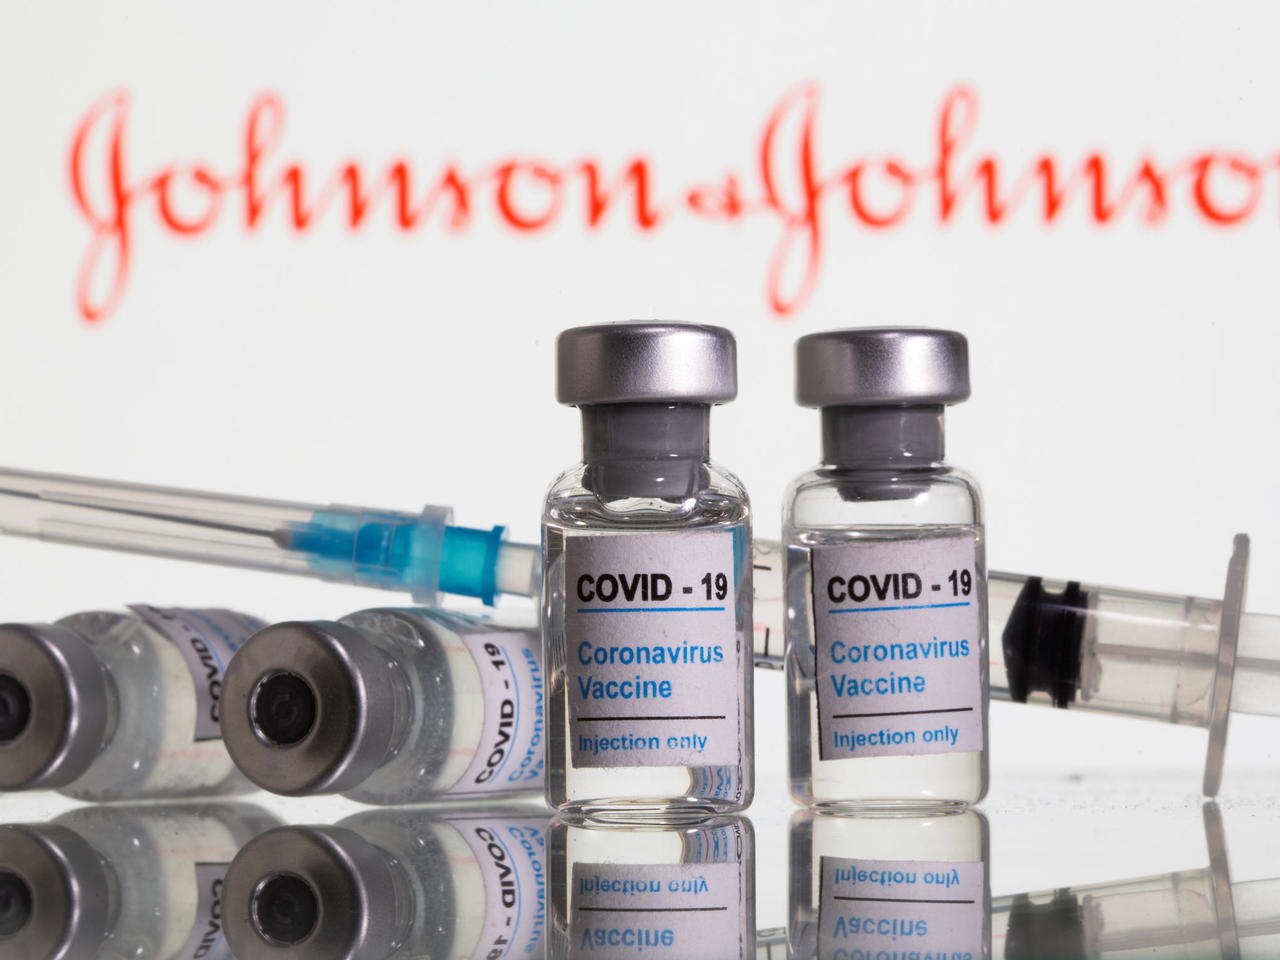 تسجيل اللقاح في بوابة مقيم